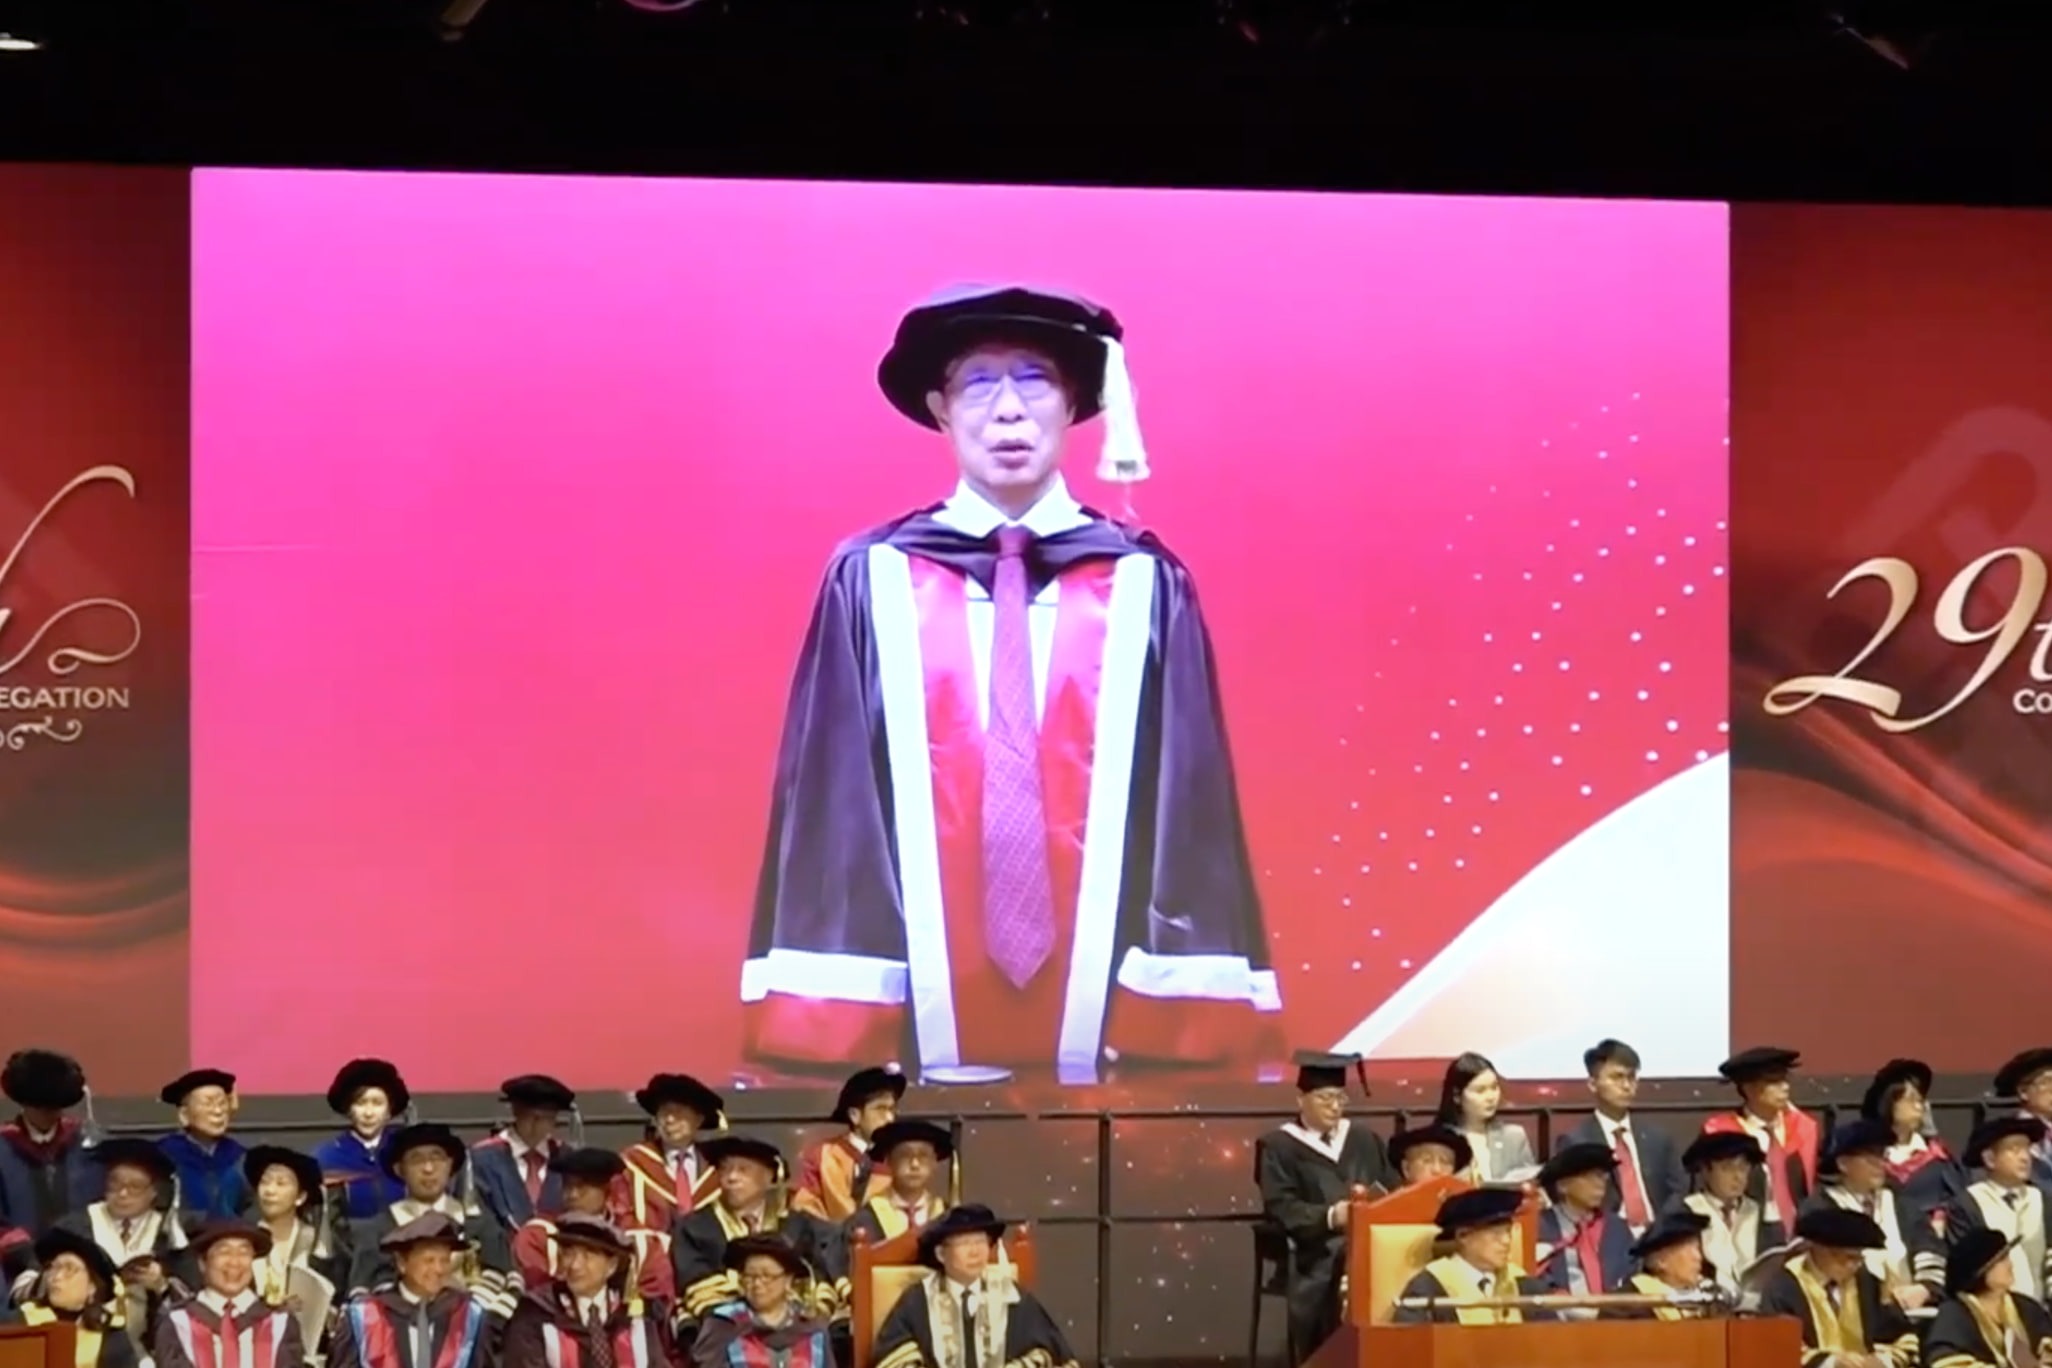 鍾南山獲頒理工大學榮譽博士學位 稱是自己和團隊努力和堅持的認可